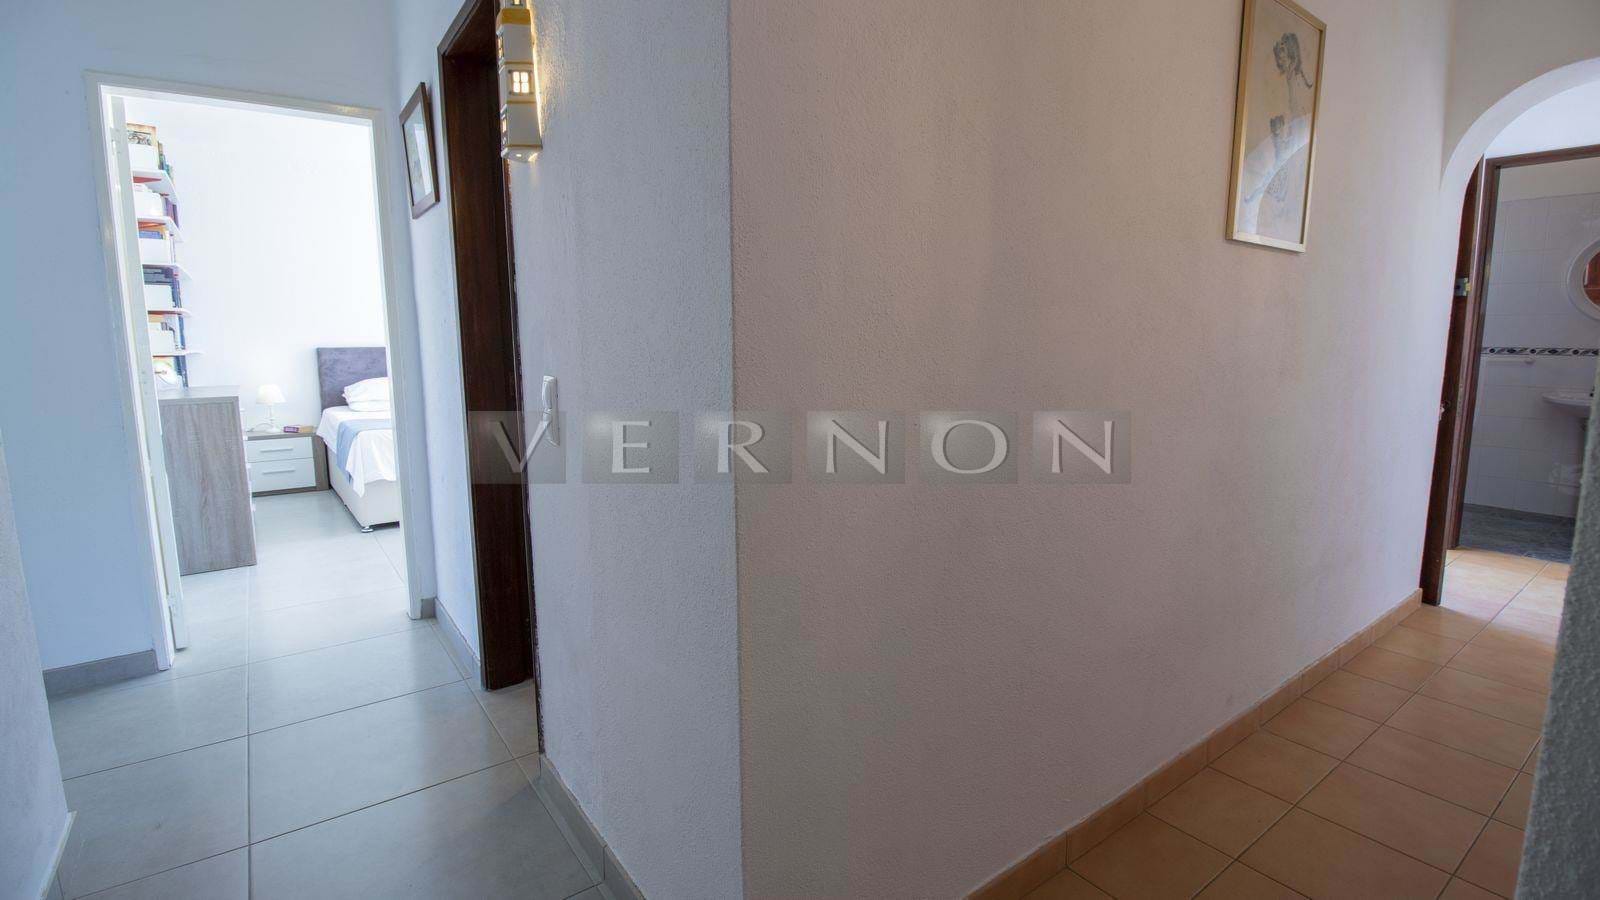 Vernon Imobiliária